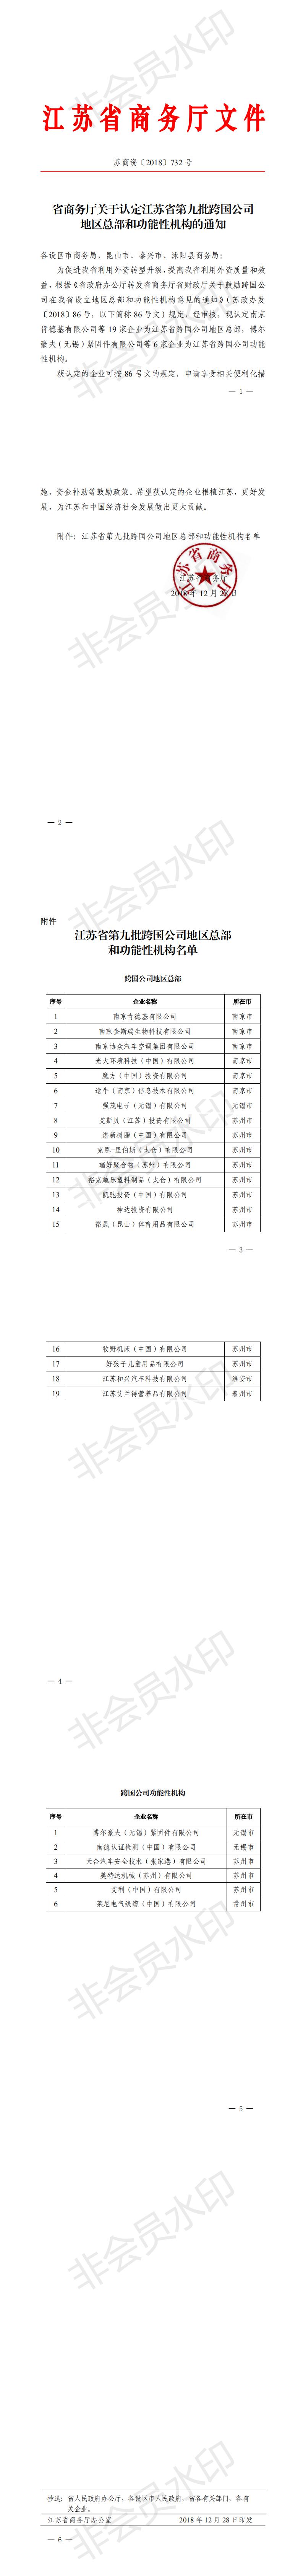 江苏省第九批跨国公司地区总部和功能性机构认定名单